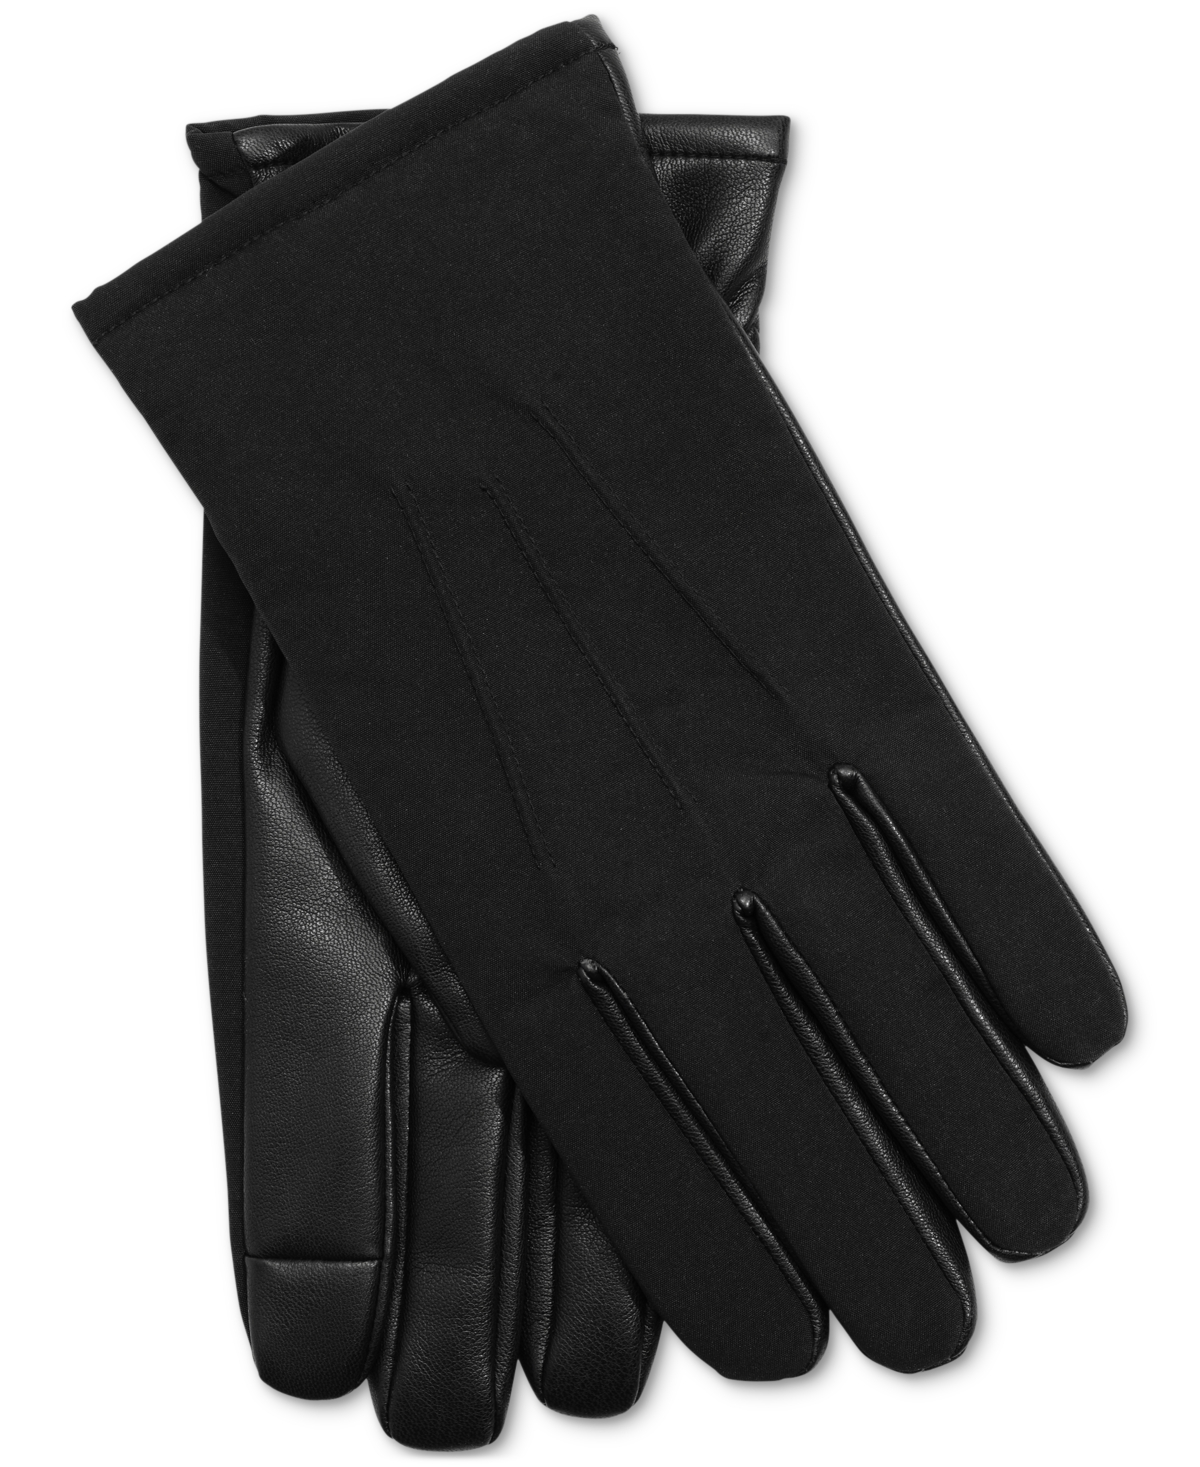 Men's Dress Gloves, Created for Macy's - Black